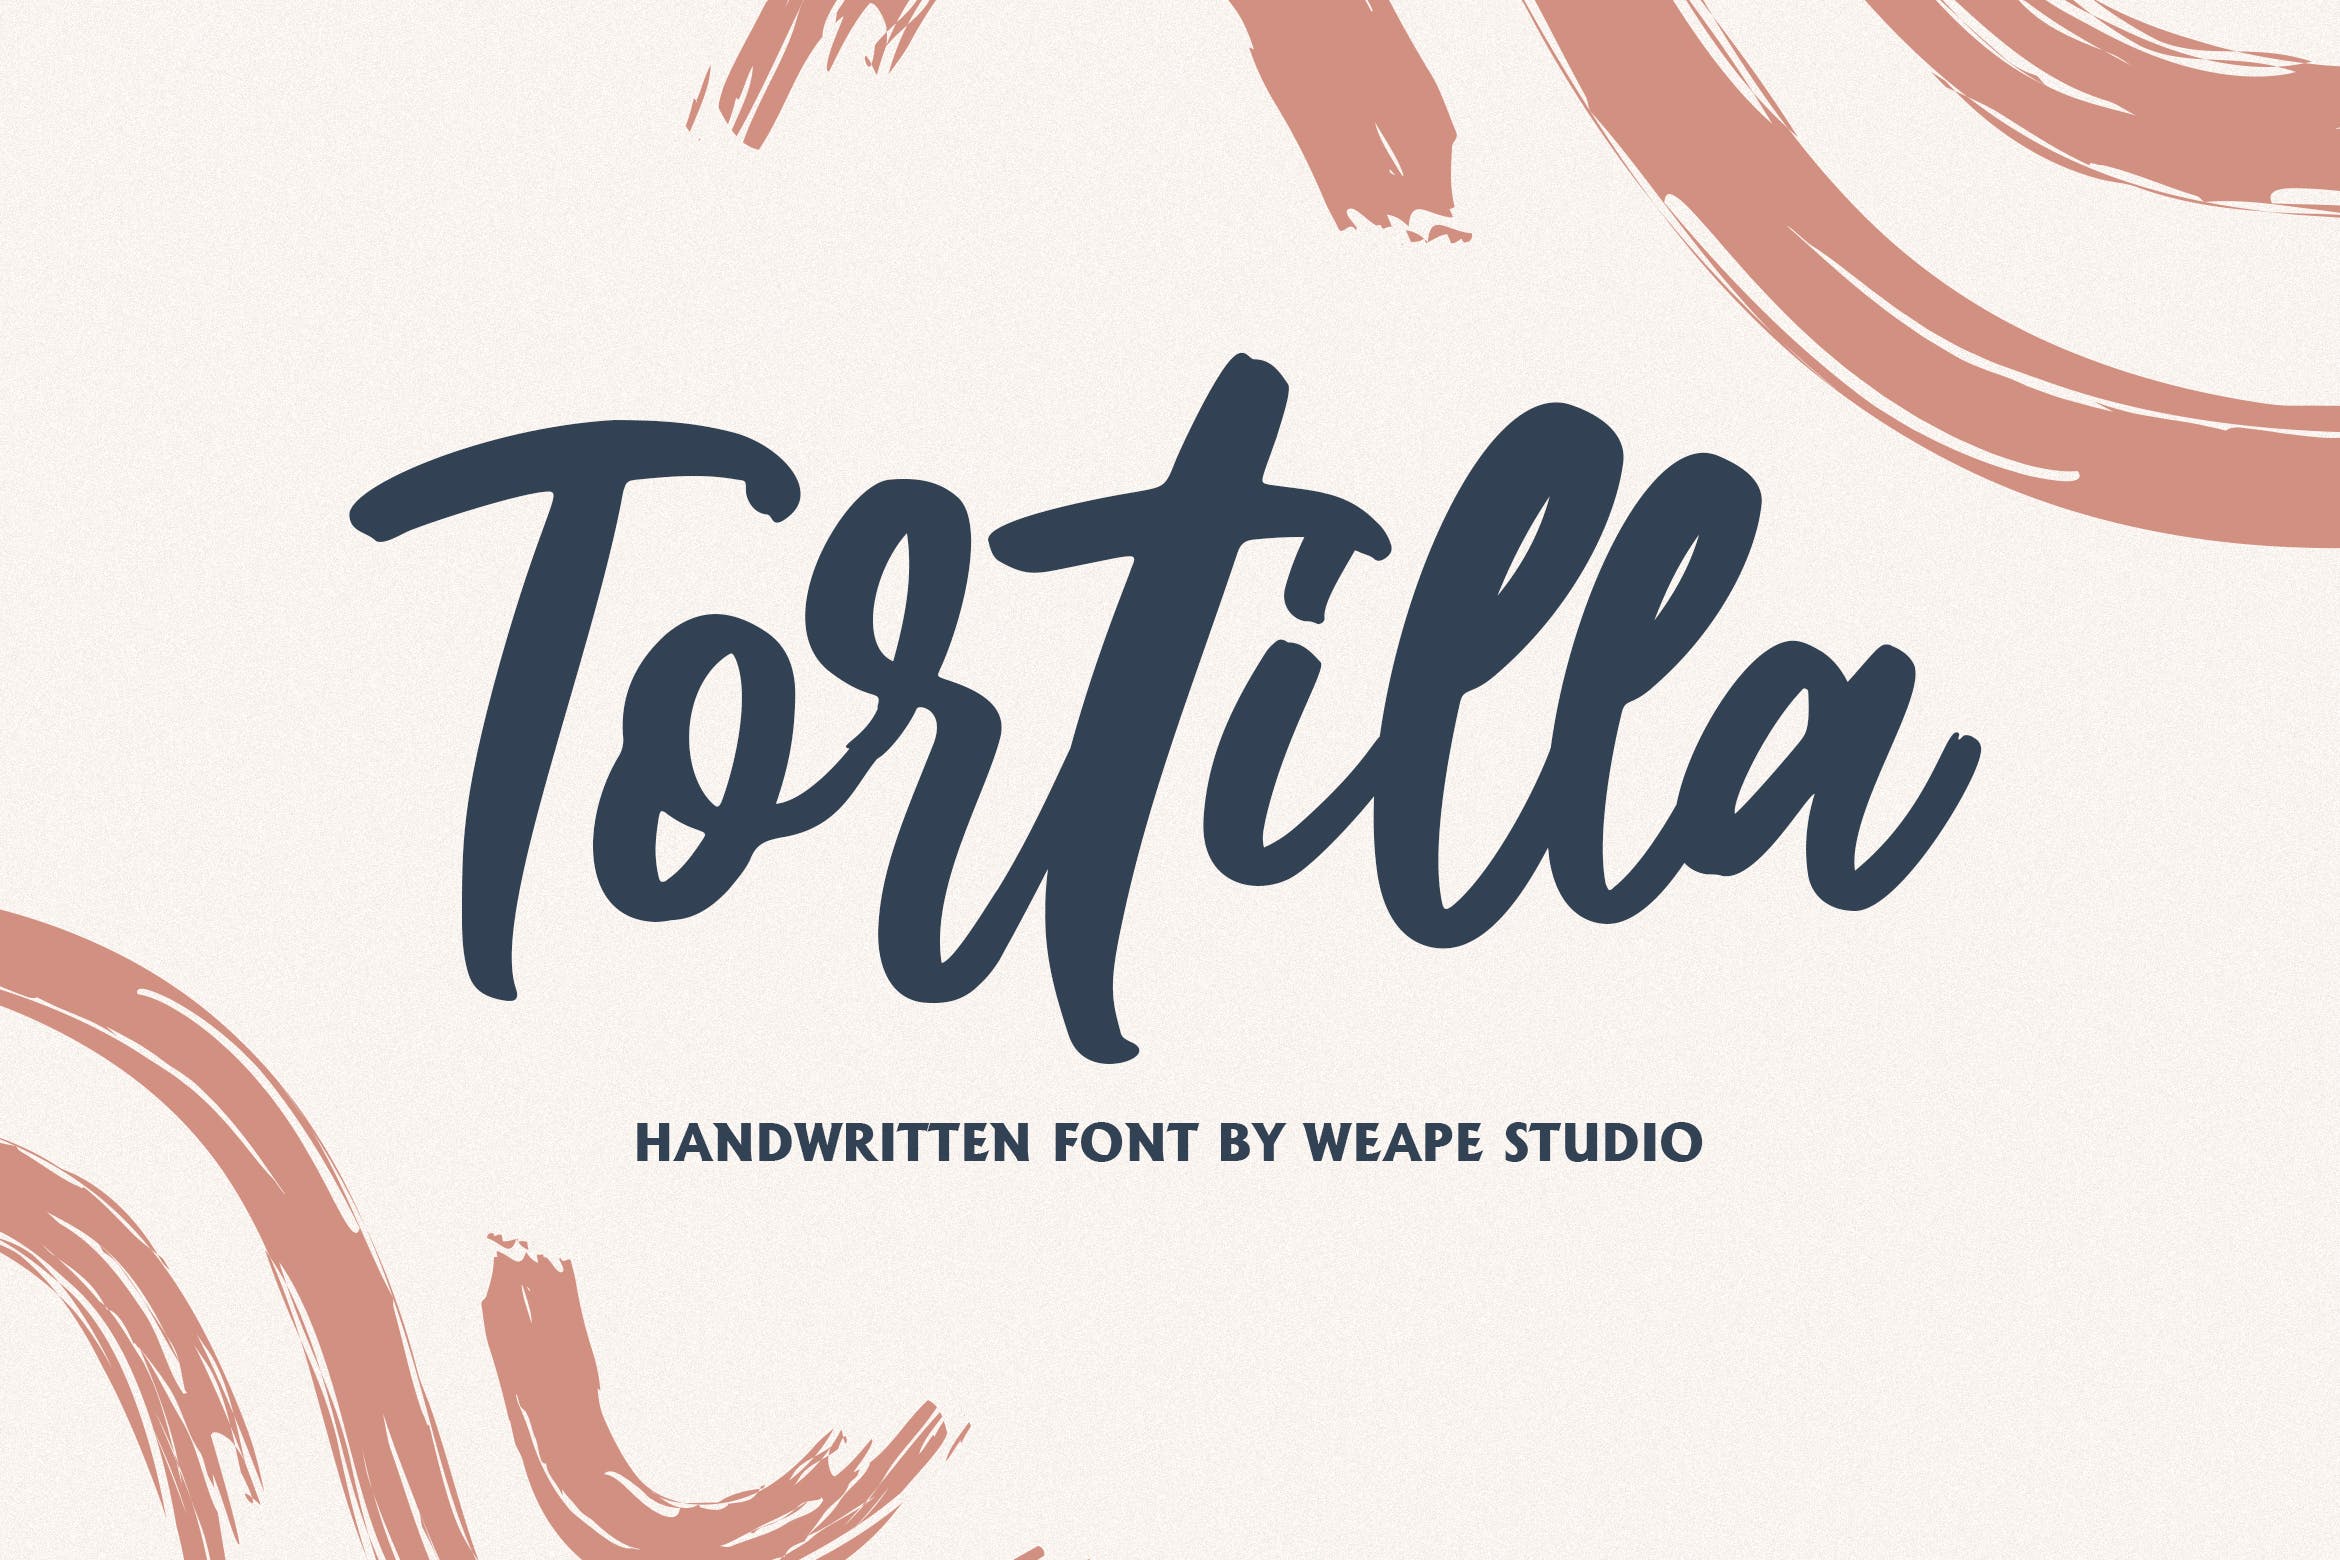 流畅笔画英文书法笔刷字体下载 Tortilla – Handwritten Font插图